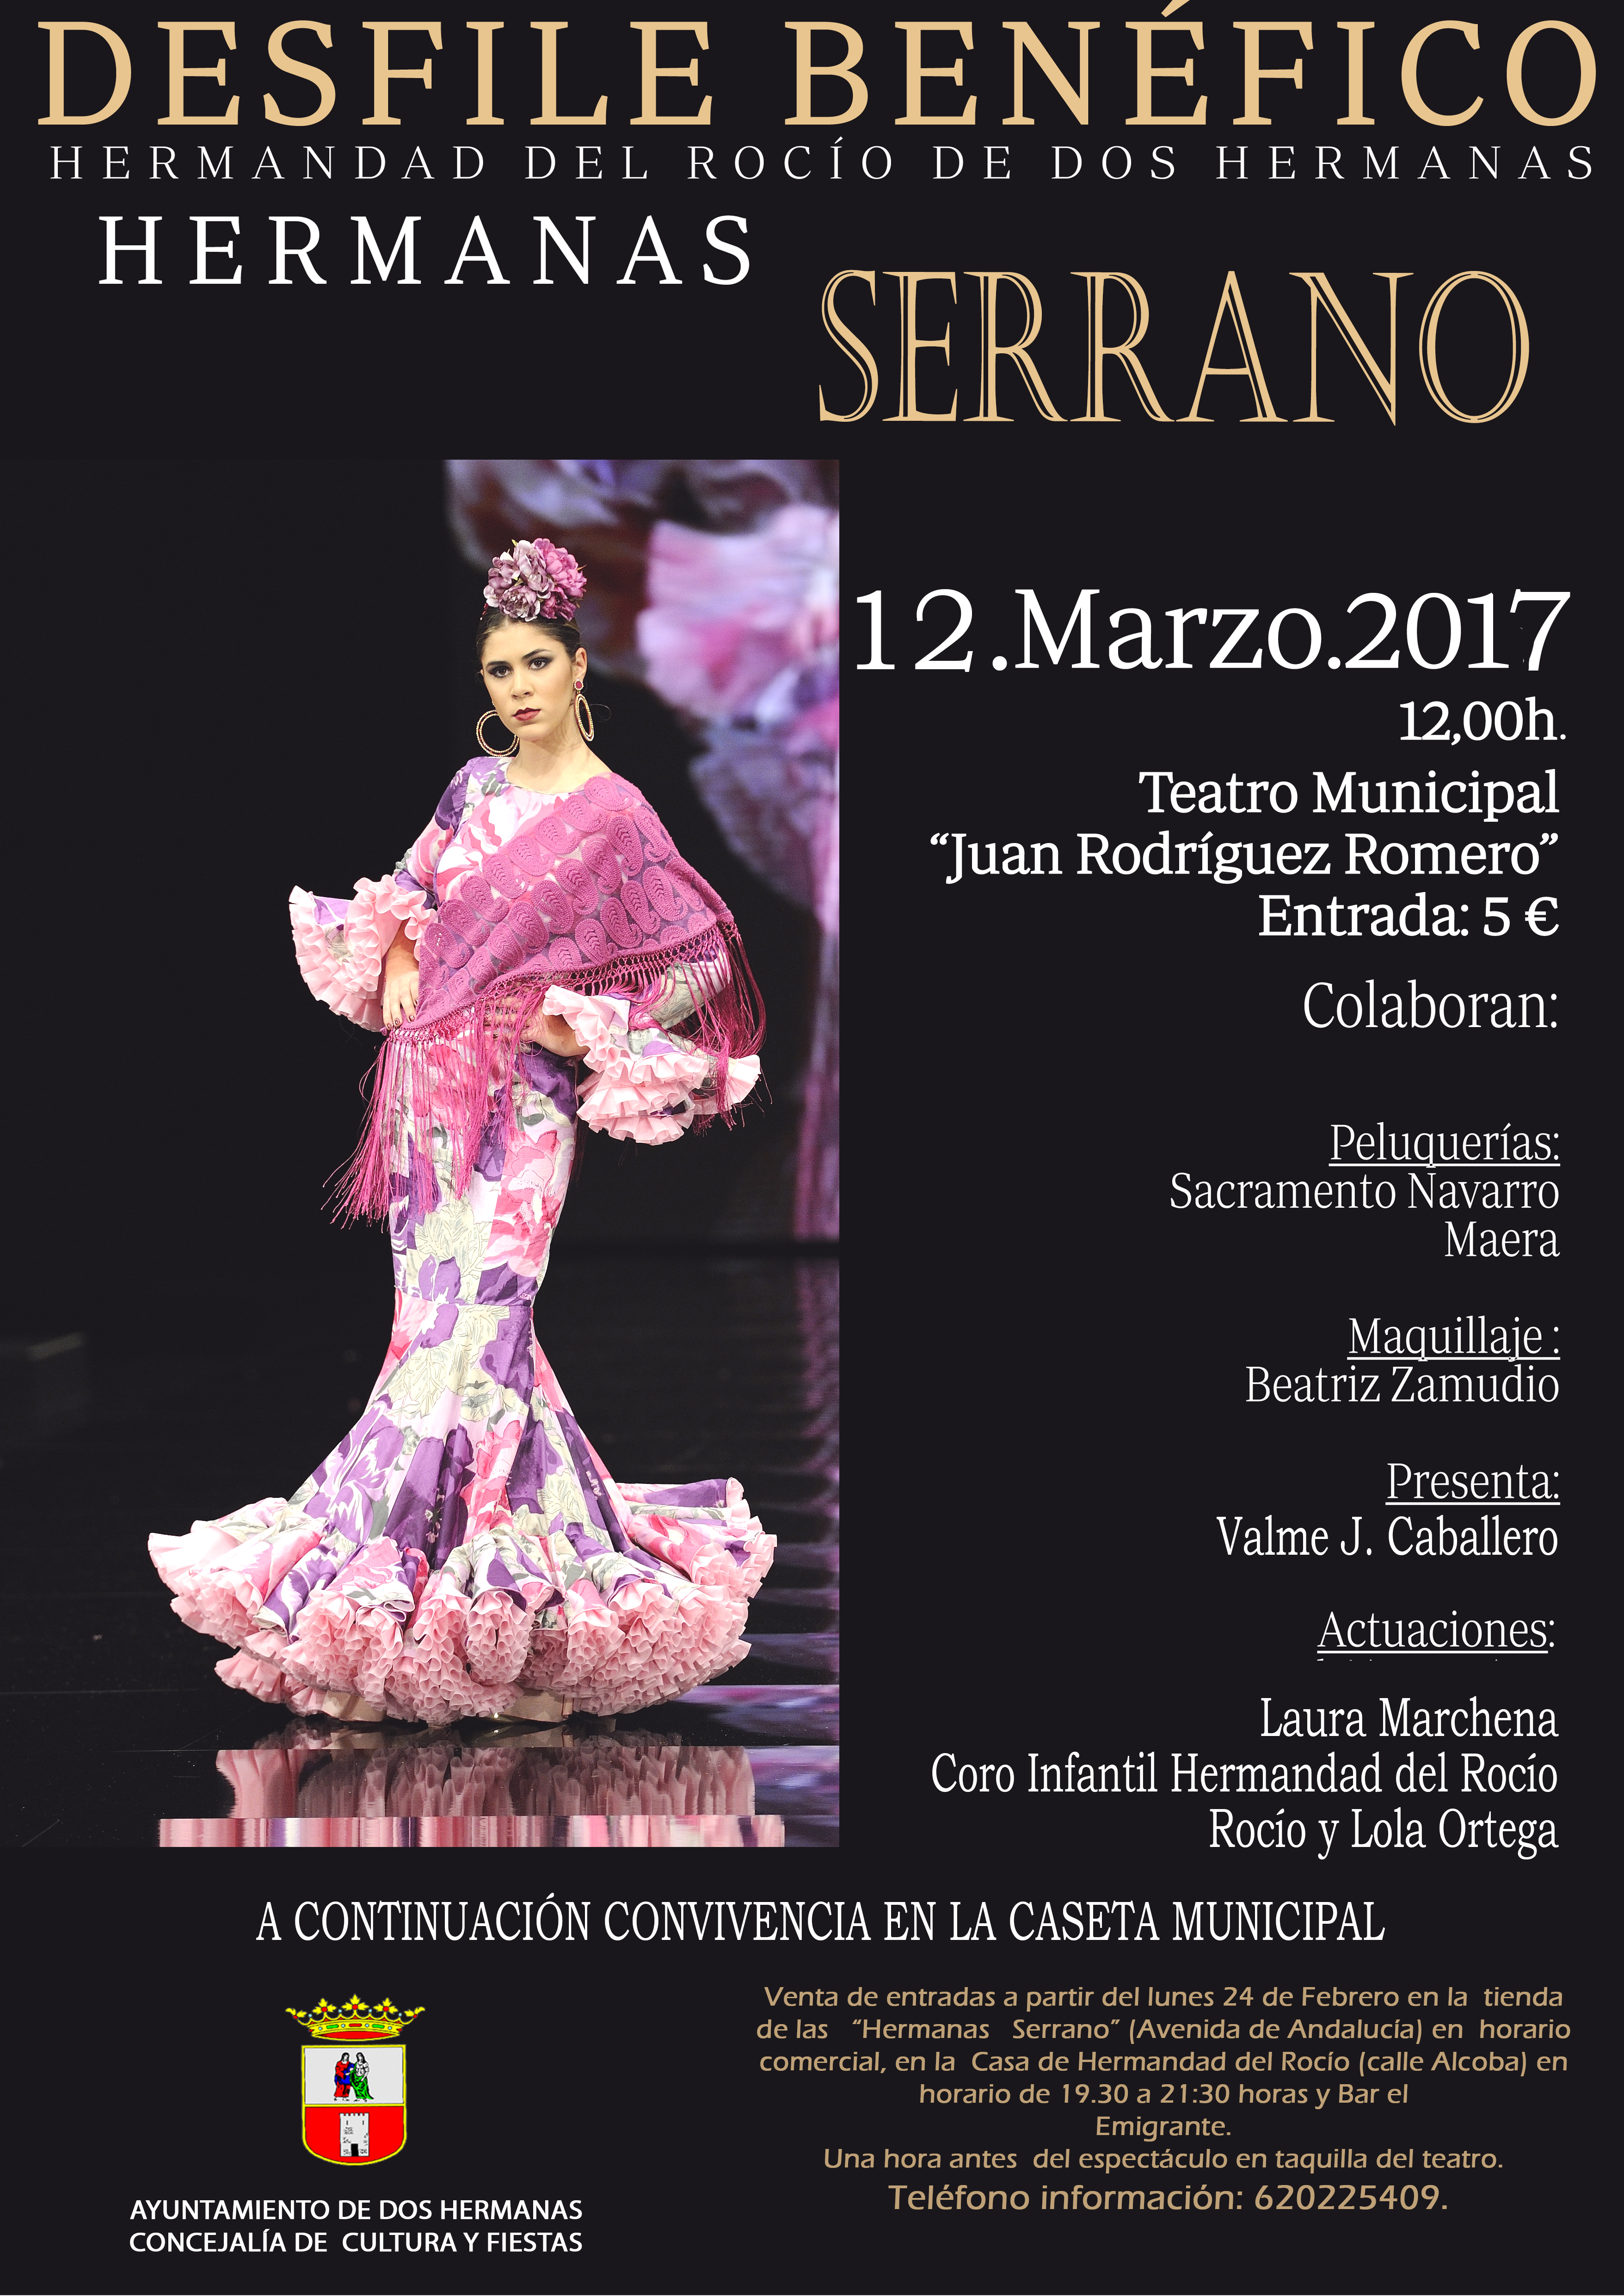 Desfile de Moda Flamenca, Hermanas Serrano – Real y Fervorosa Hermandad de Ntra. Sra. del Rocío Hermanas Web Oficial